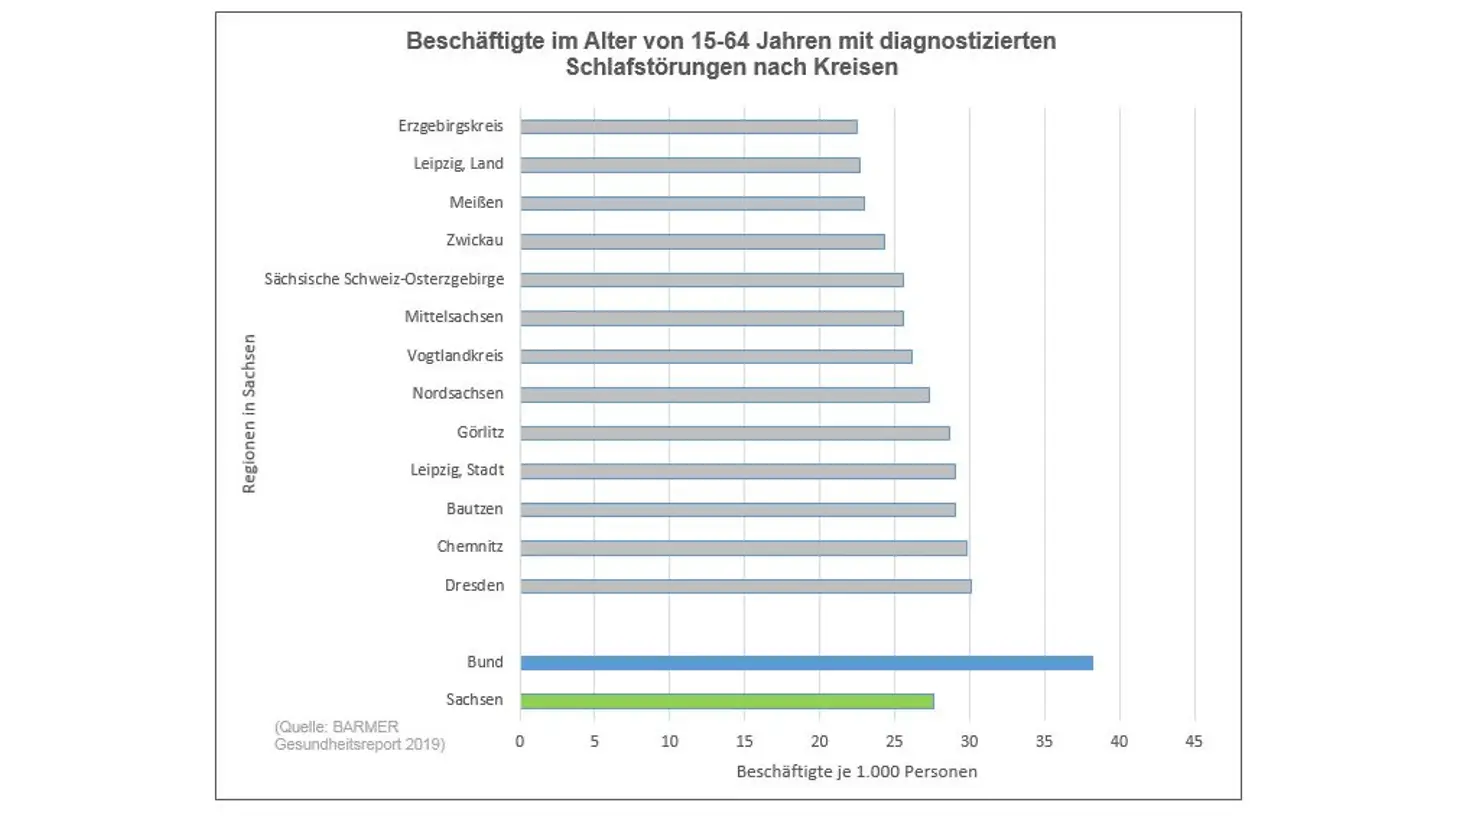 Grafik zeigt Beschäftigte mit diagnostizierten Schlafstörungen in den sächsischen Kreisen